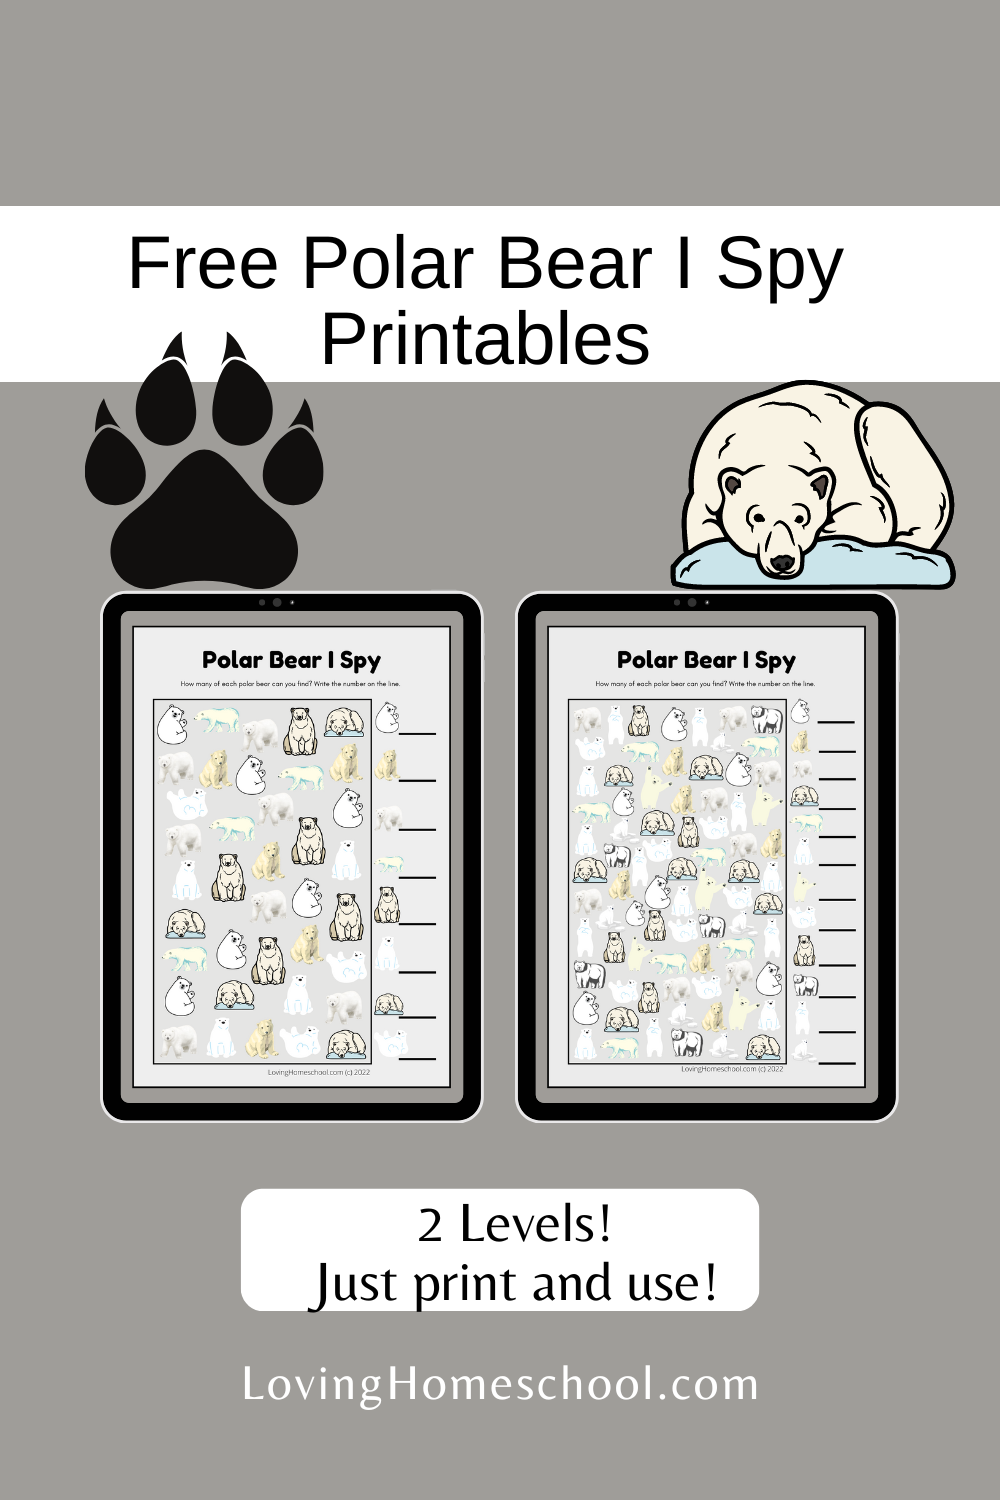 Polar Bear I Spy Printables Pinterest Pin